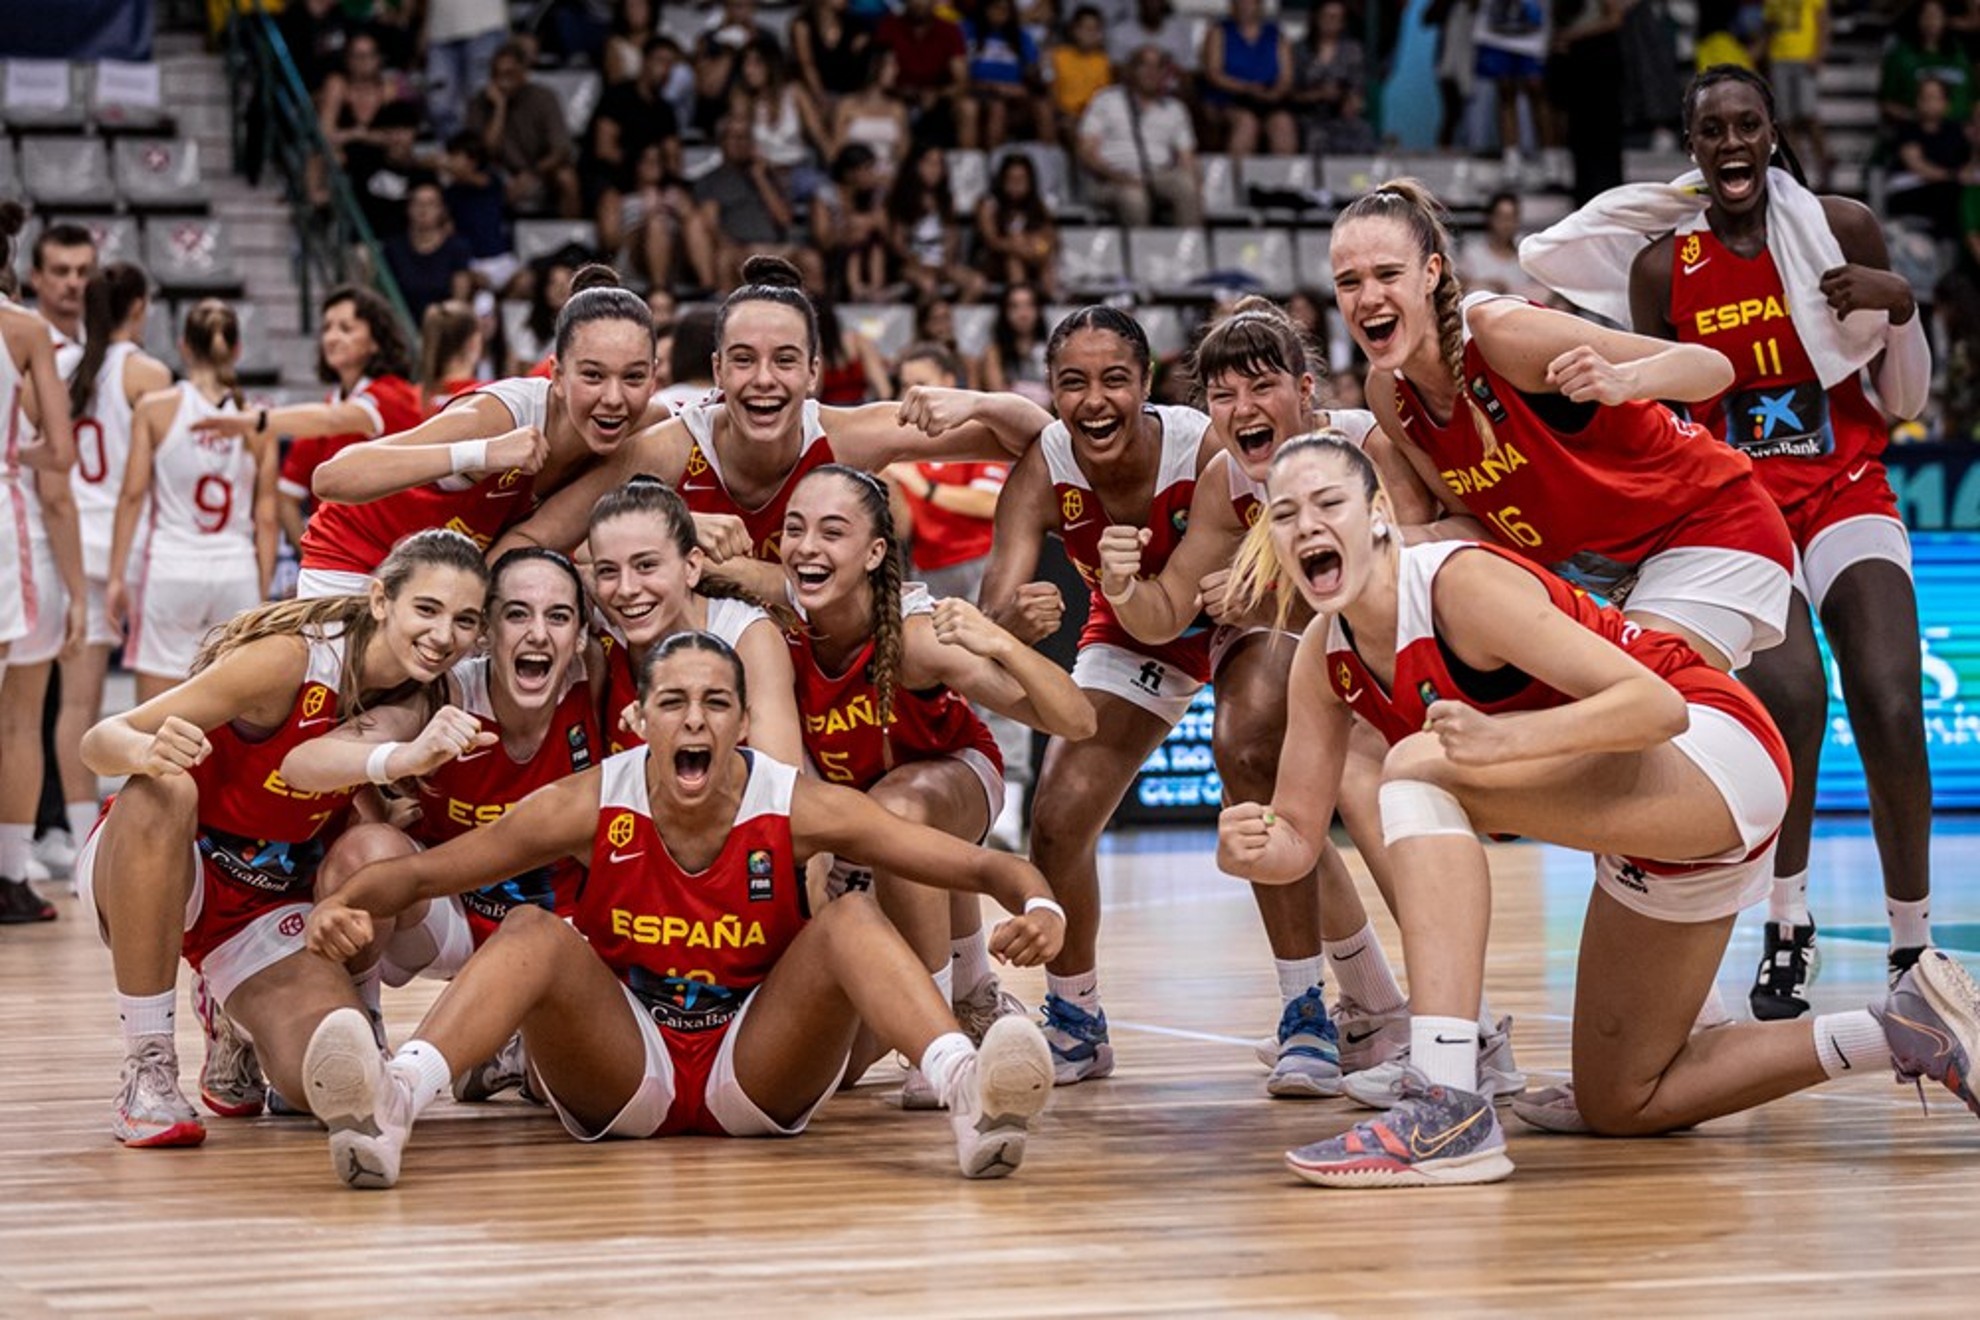 La seleccin espaola sub 16, eufrica tras clasificarse para la final del Europeo. FIBA PHOTO